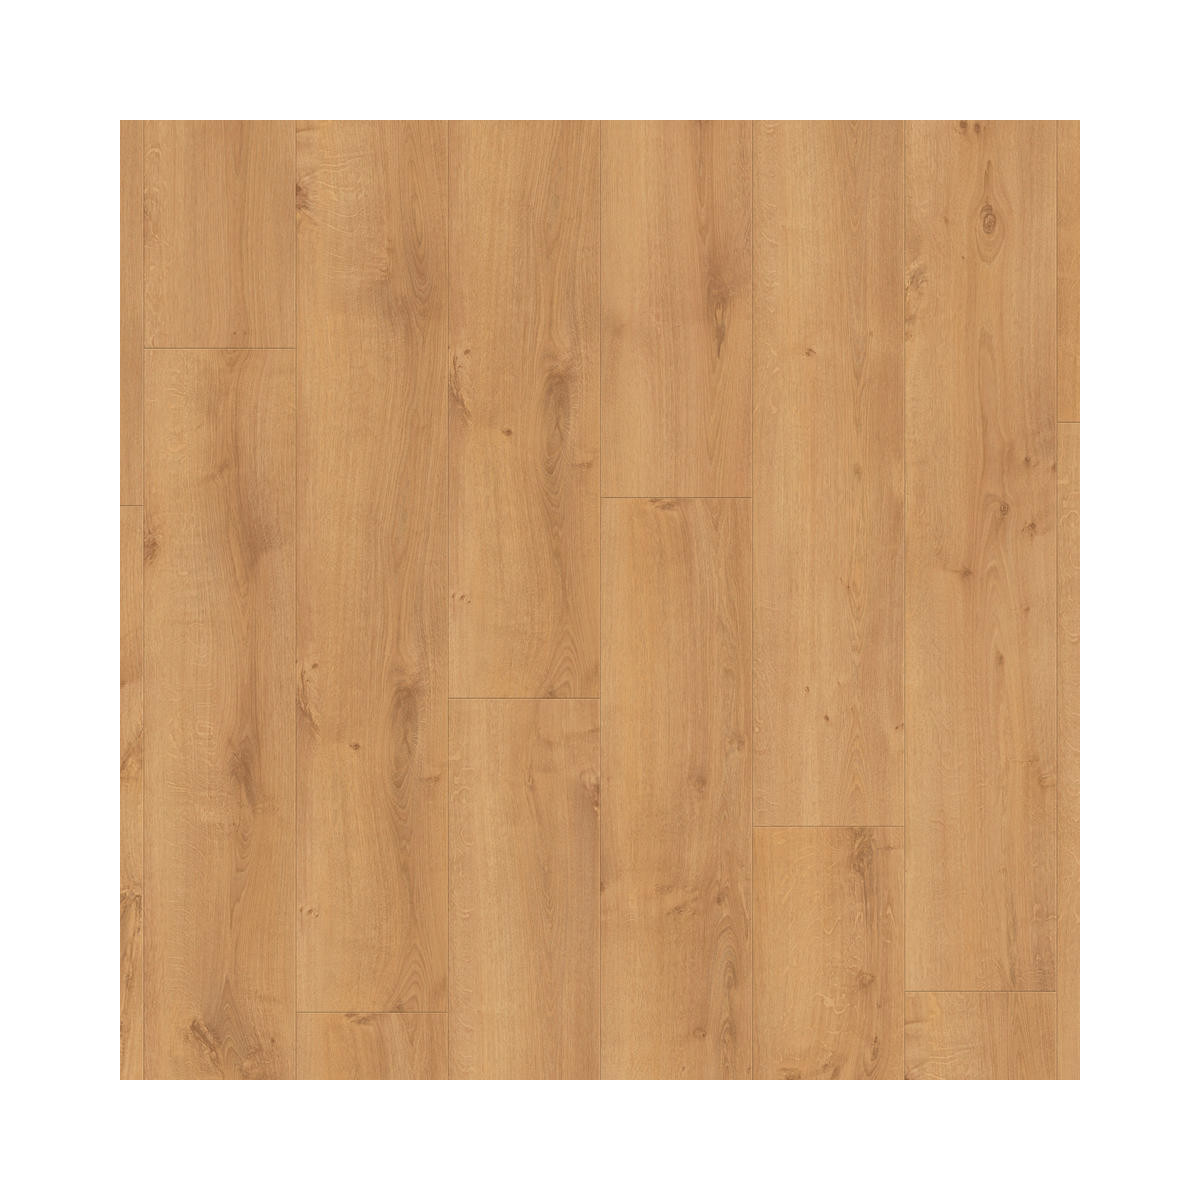 Vinylová podlaha lepená iD Inspiration 30 Rustic Oak Warm Natural